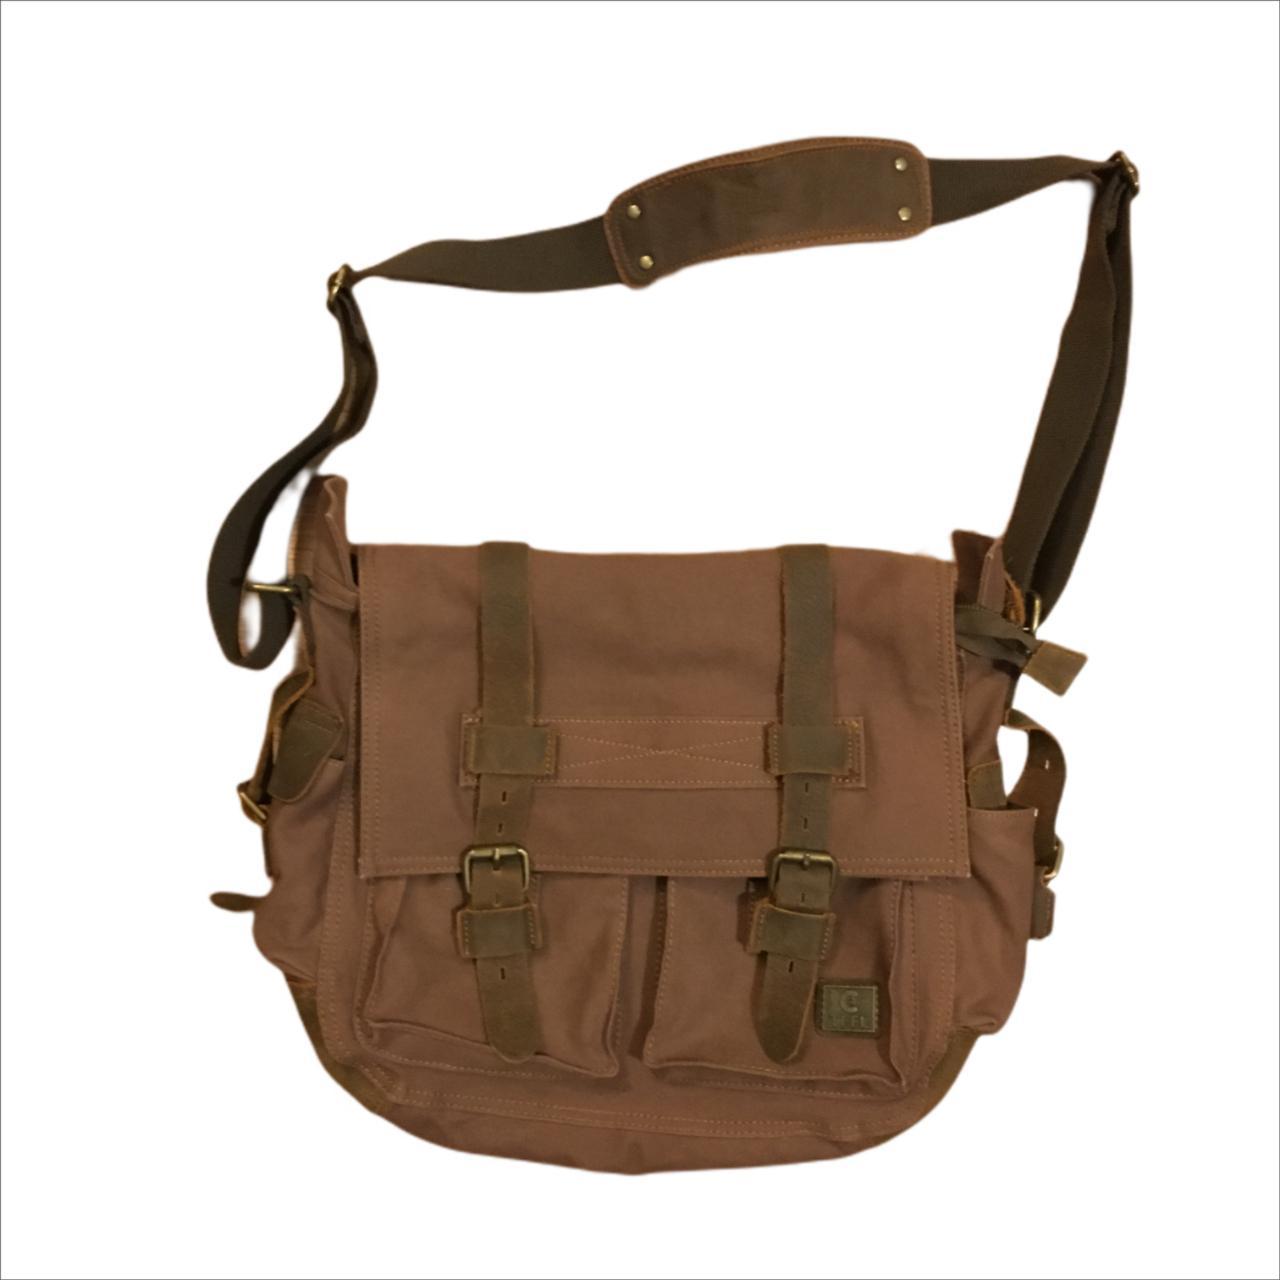 Product Image 1 - Vintage Messenger Bag

Color: Brown/Black

Defects: no